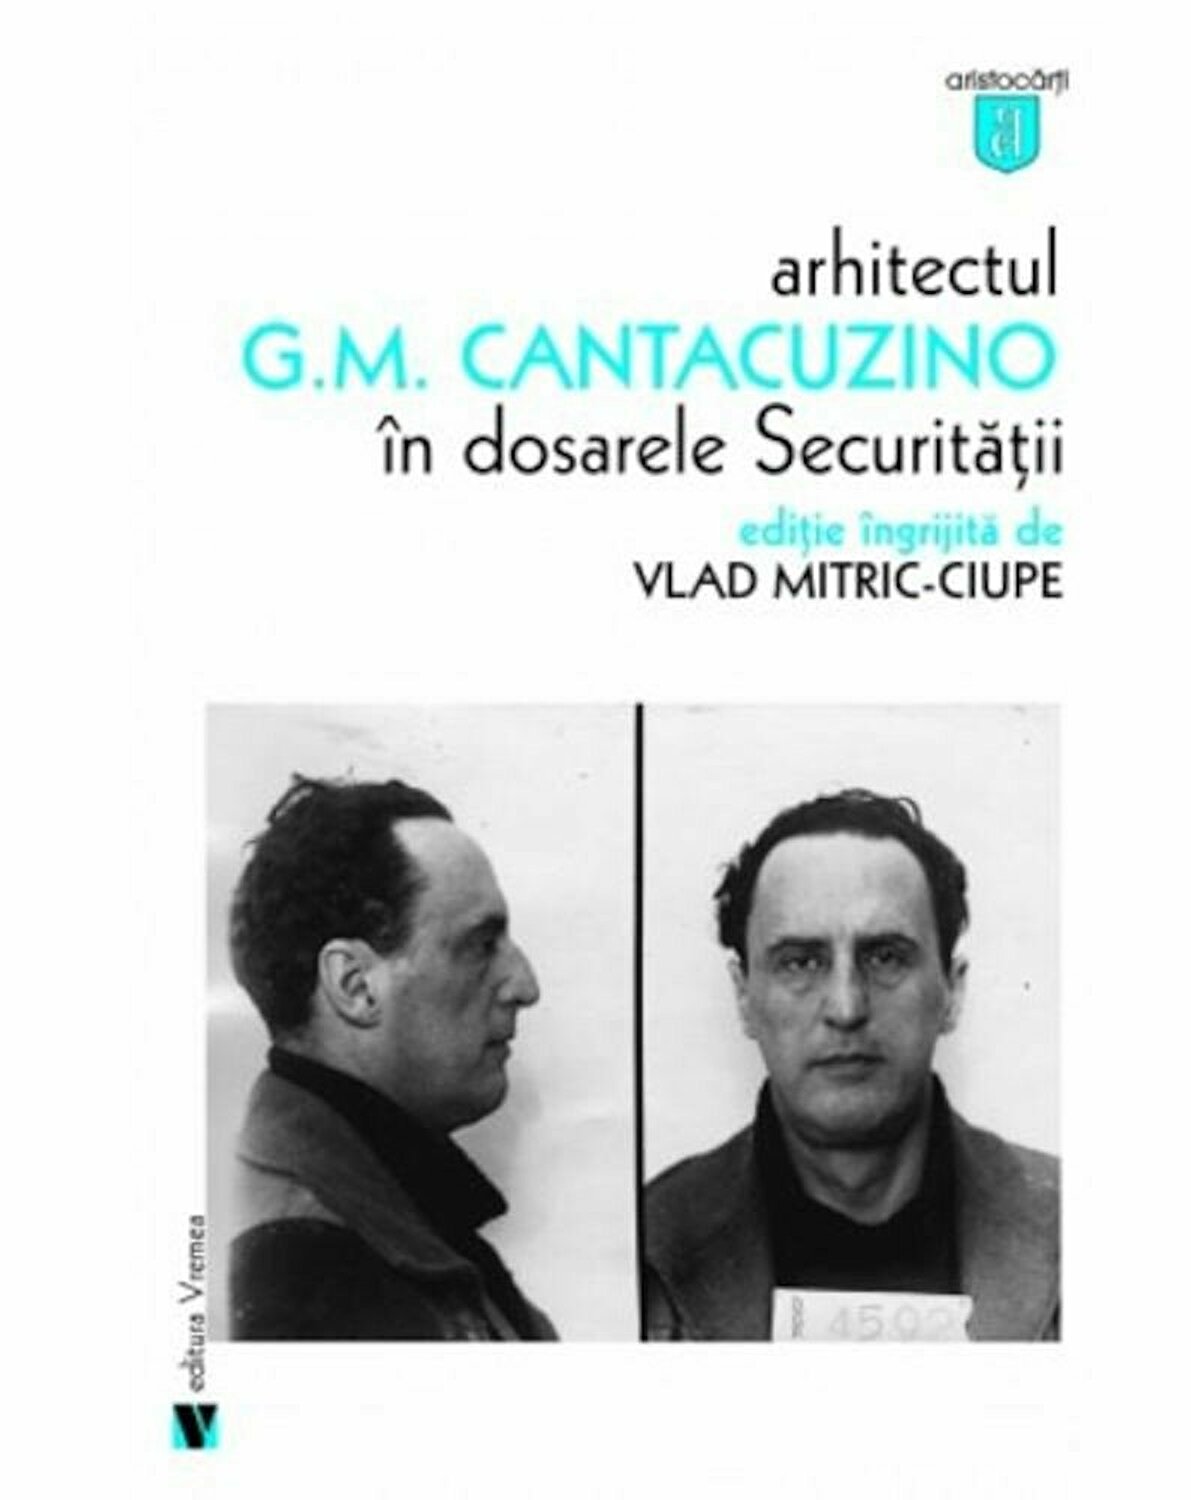 Arhitectul G.M. Cantacuzino in dosarele Securitatii | Vlad Mitric-Ciupe carturesti.ro imagine 2022